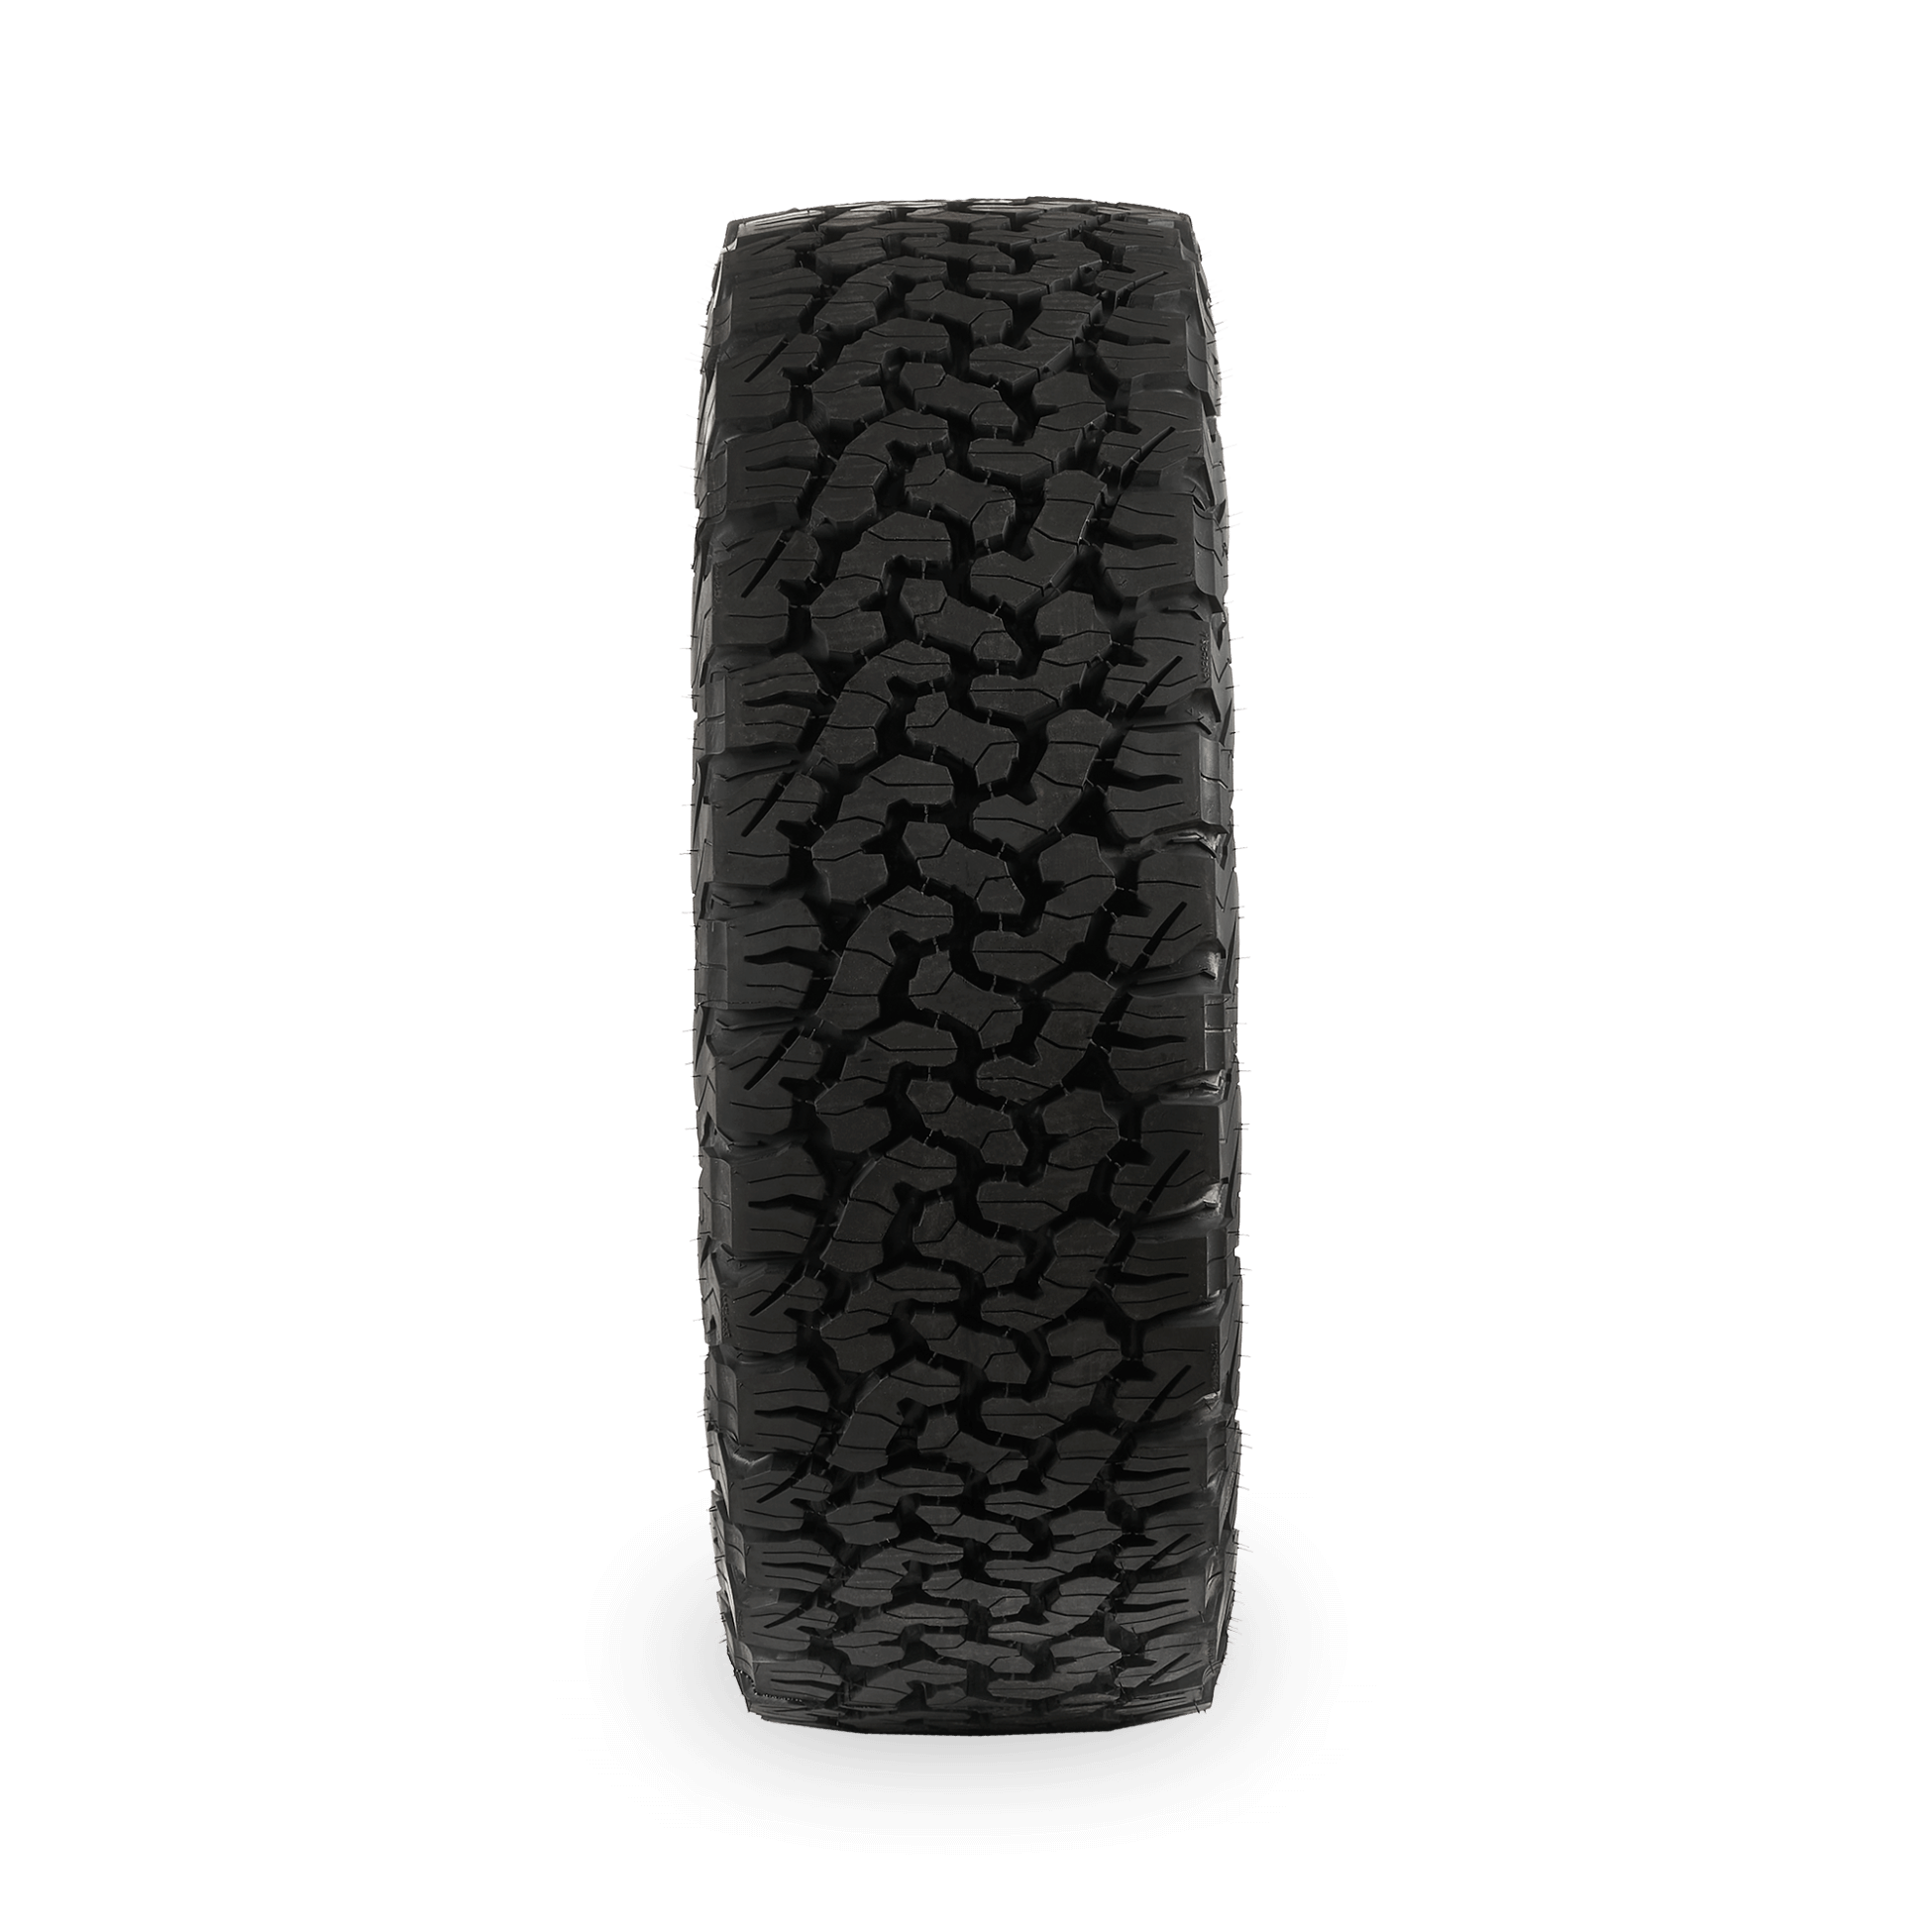 tyres-rims-lorry-suv-bf-goodrich-all-terrain-t-a-ko2-m-s-all-season-tire-215-70r16-100r